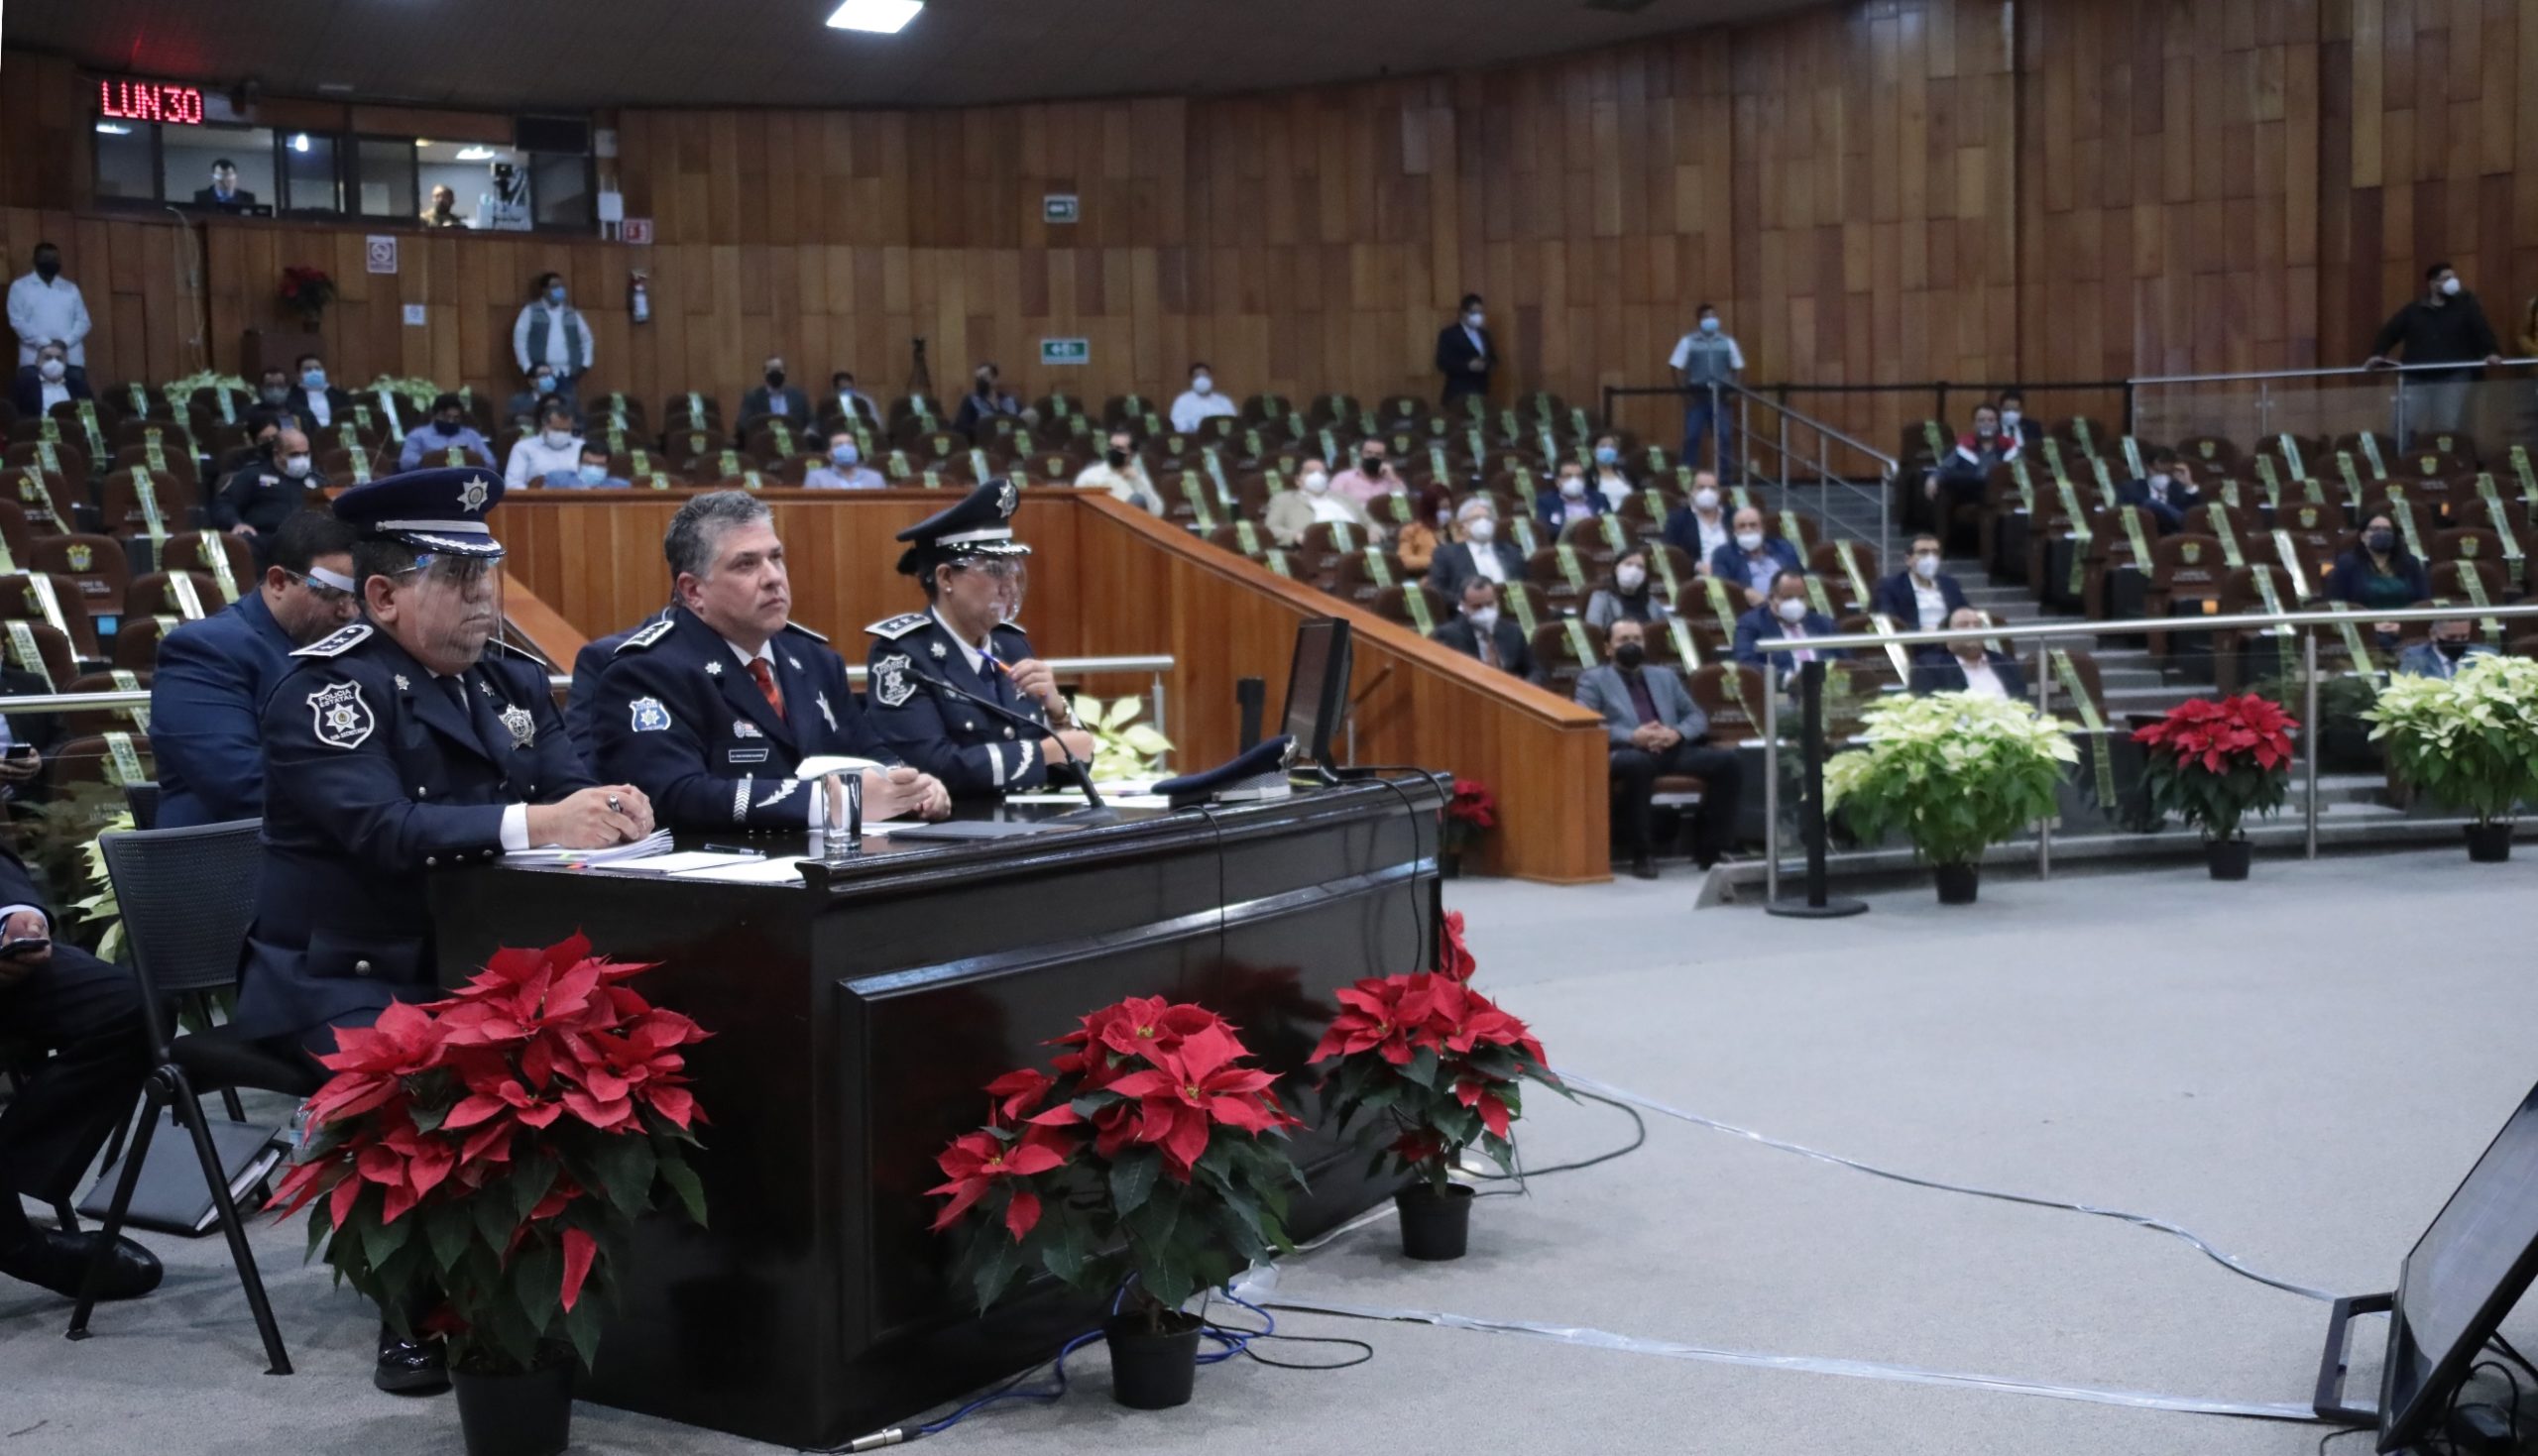 Restableciendo el orden, eliminando viejas prácticas y construyendo políticas de seguridad transformamos Veracruz: SSP